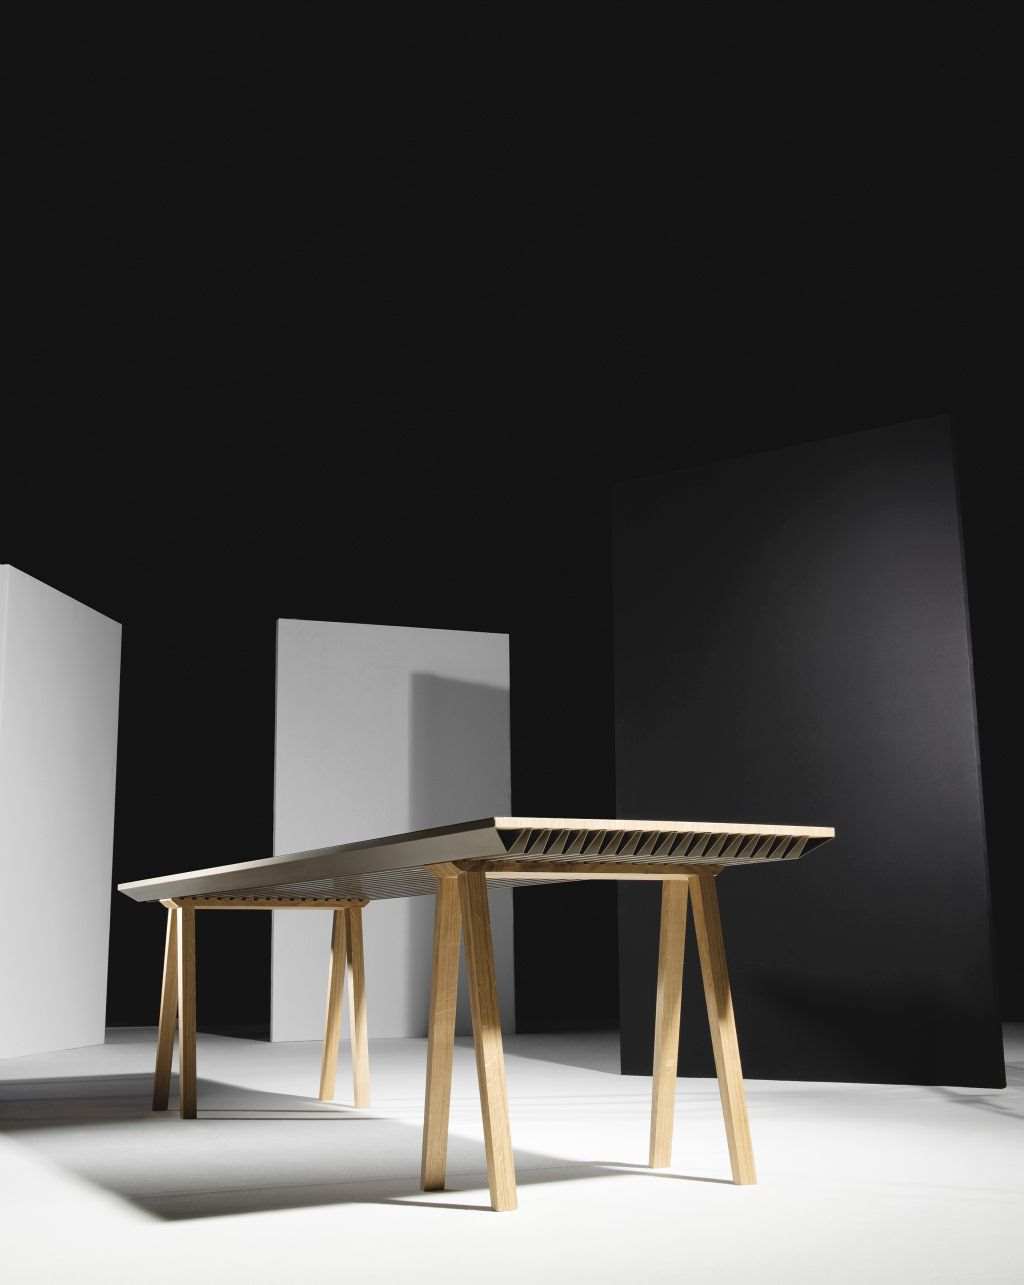 Французские дизайнеры создали стол-кондиционер